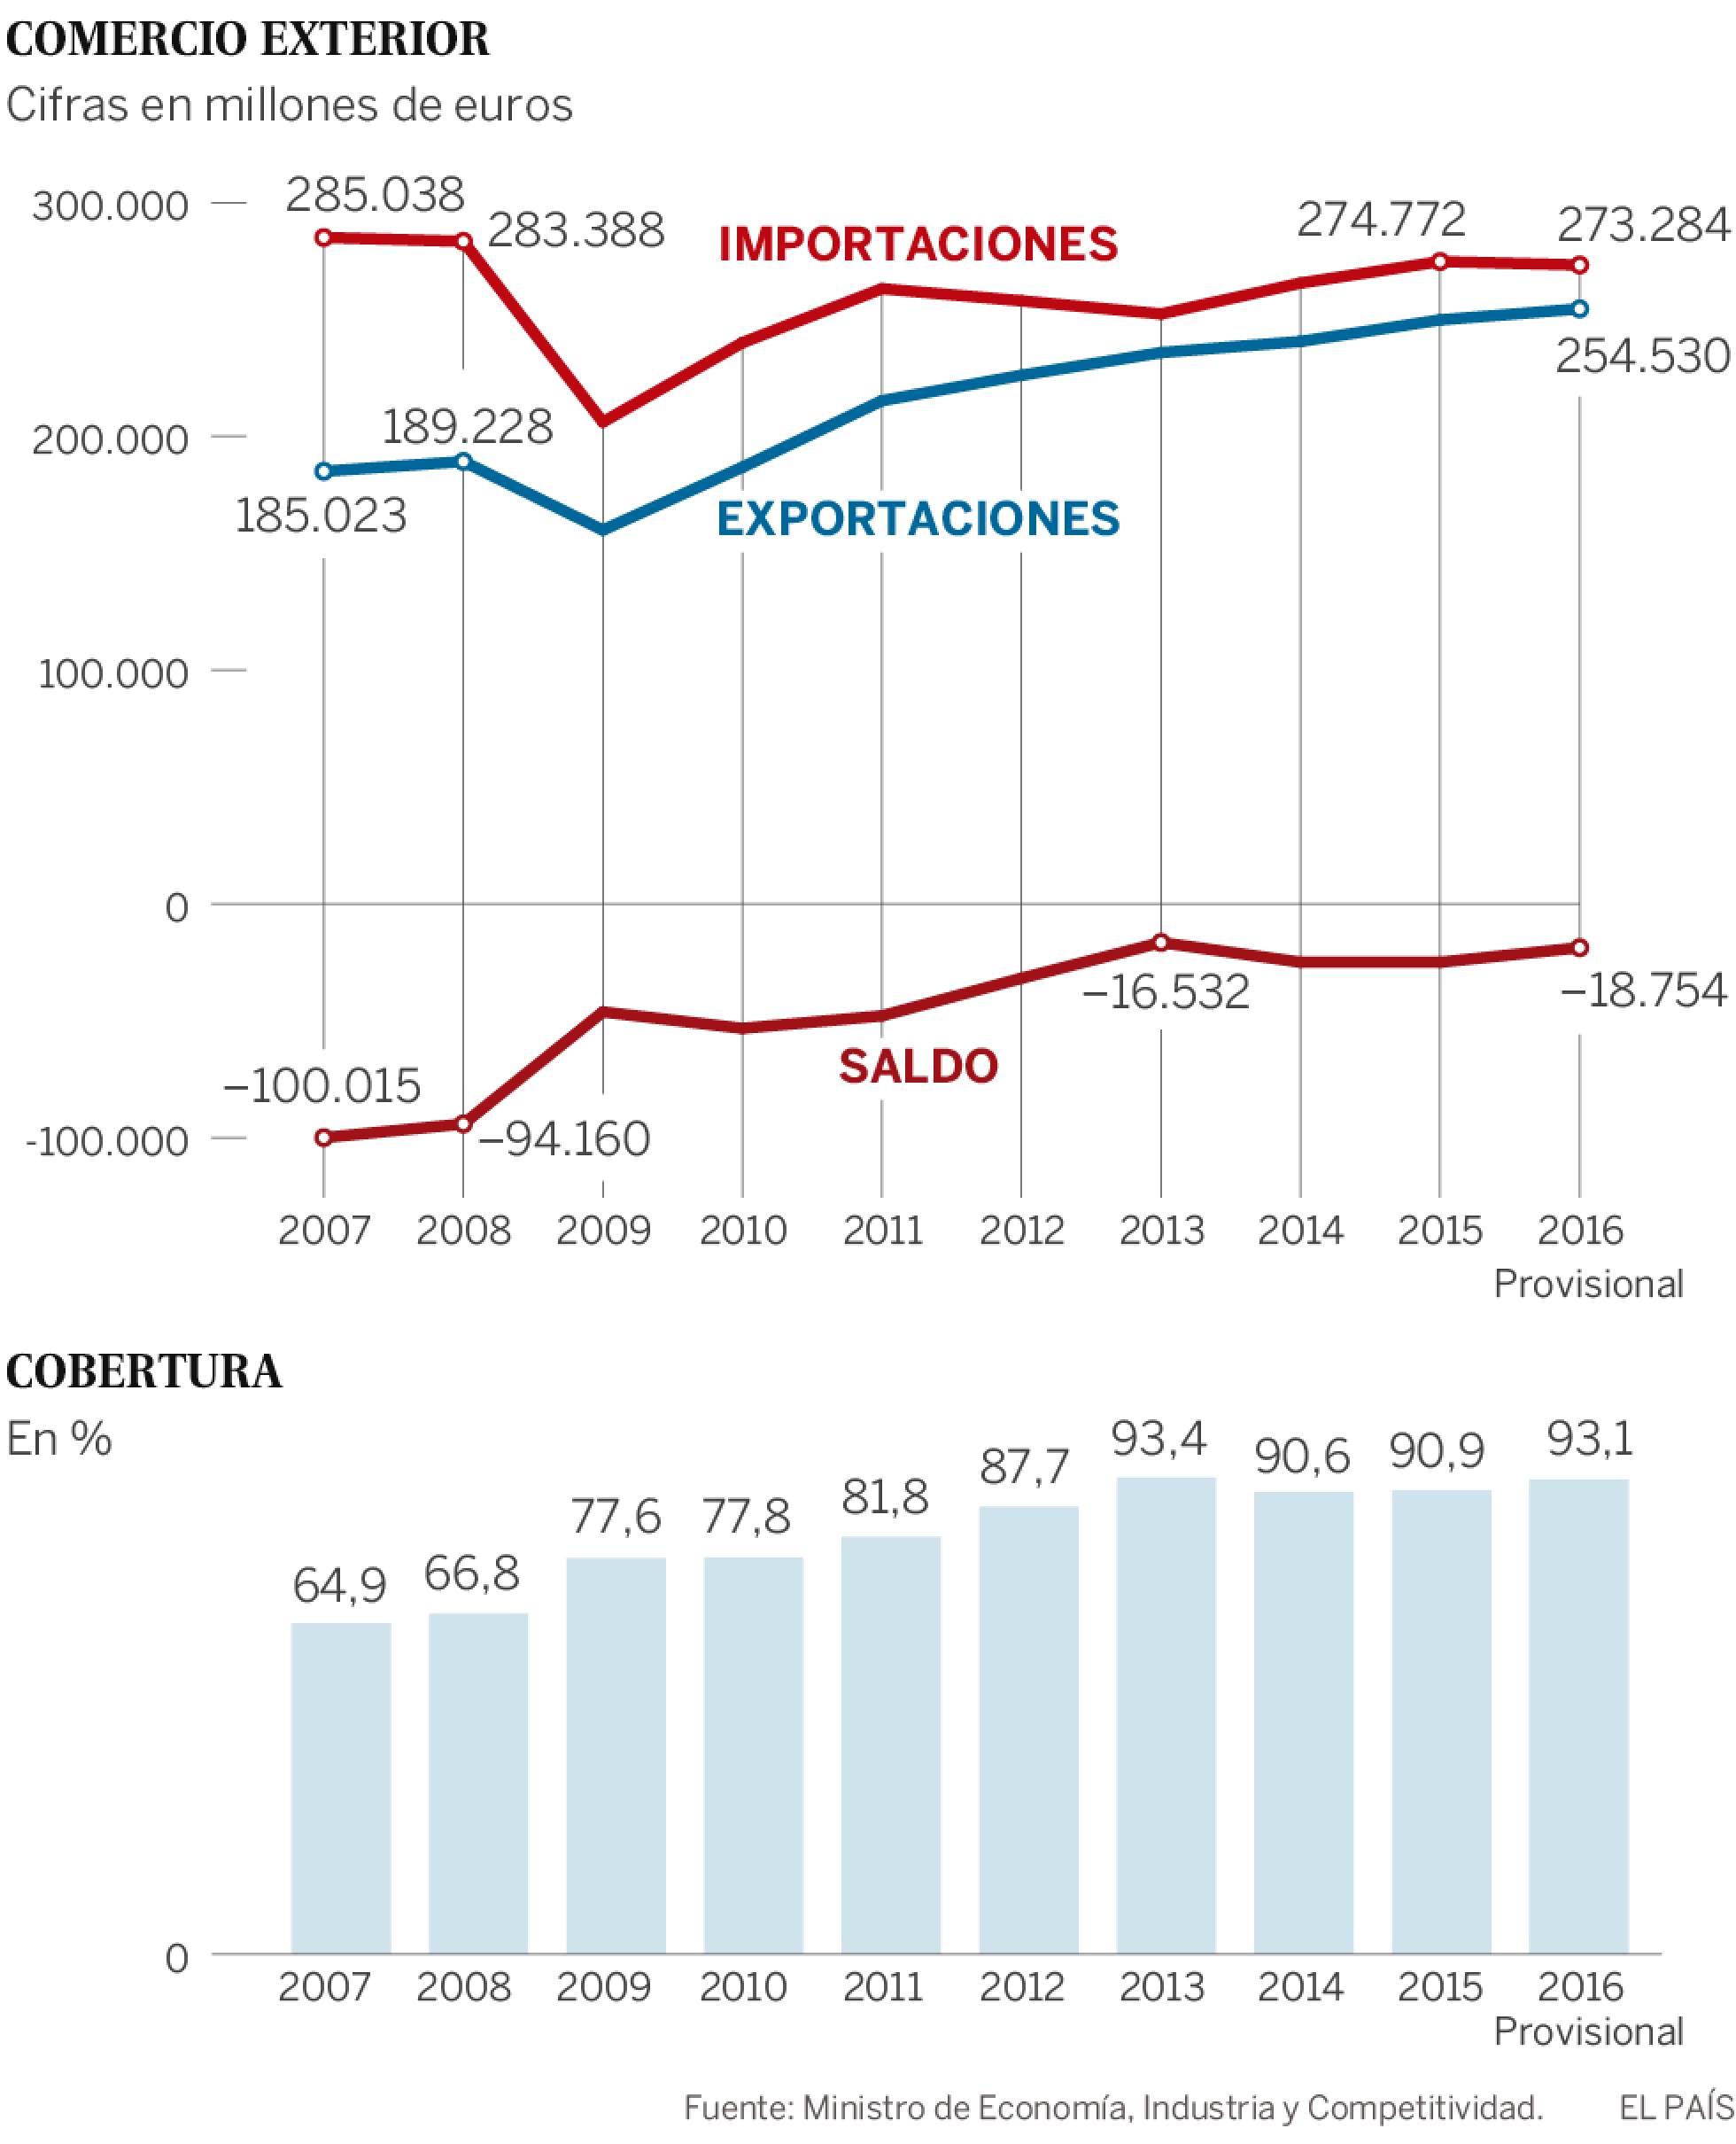 Las exportaciones españolas logran un récord de 254.530 millones de euros en 2016